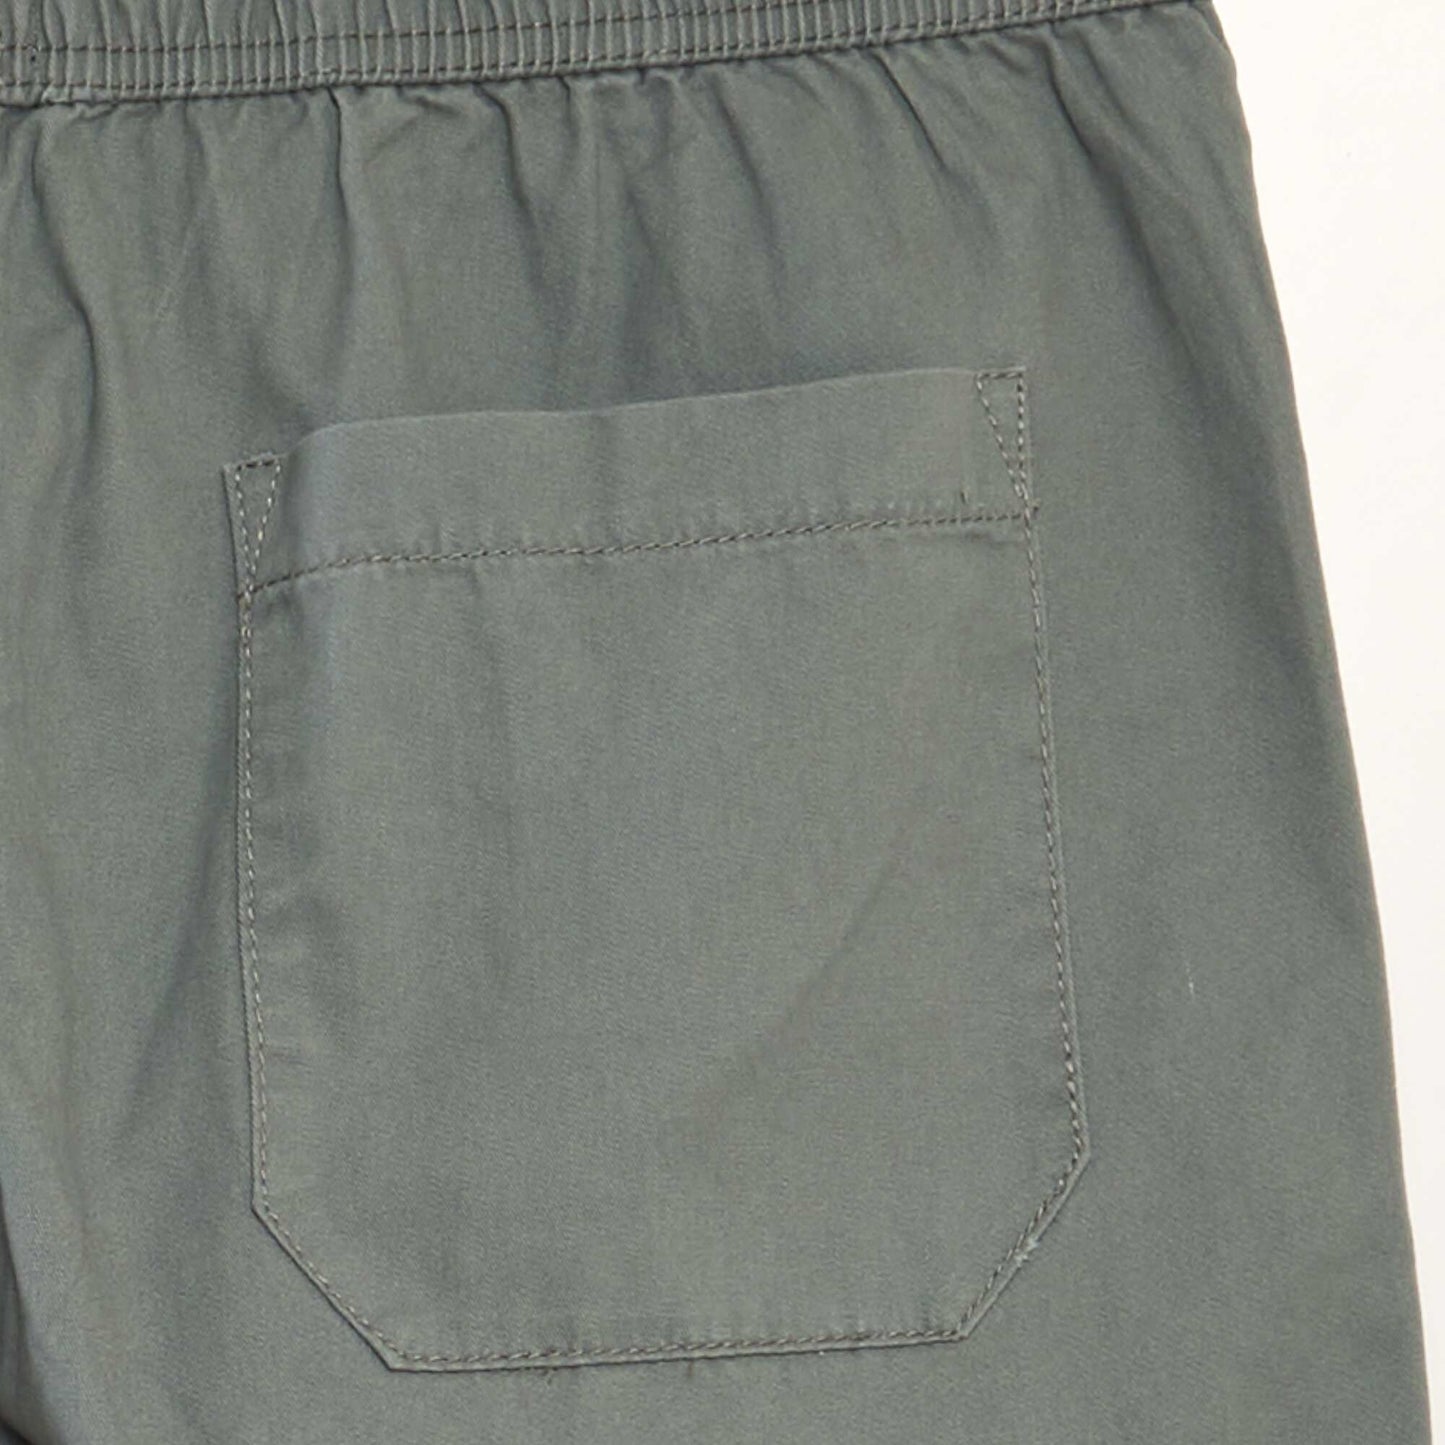 Chino Bermuda shorts with elasticated waist GREEN